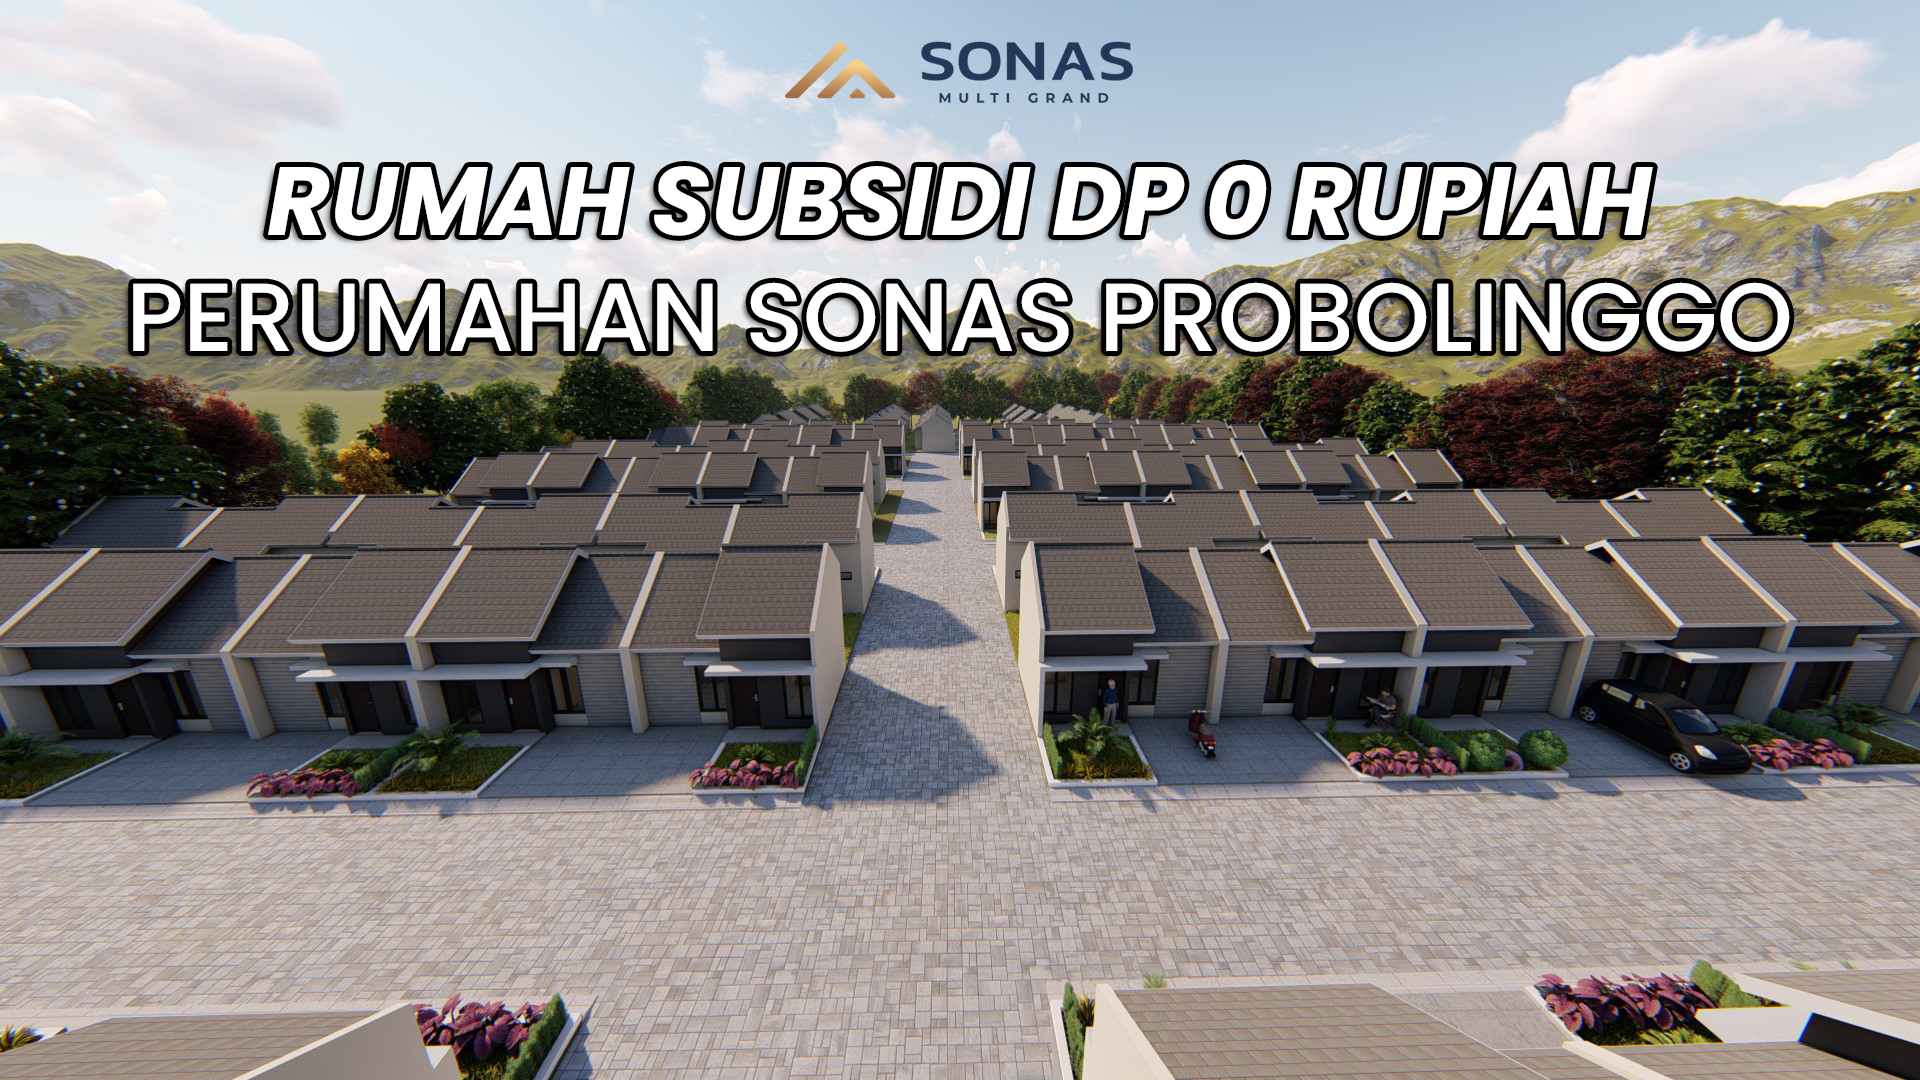 Rumah Subsidi DP 0 Rupiah Sonas Probolinggo